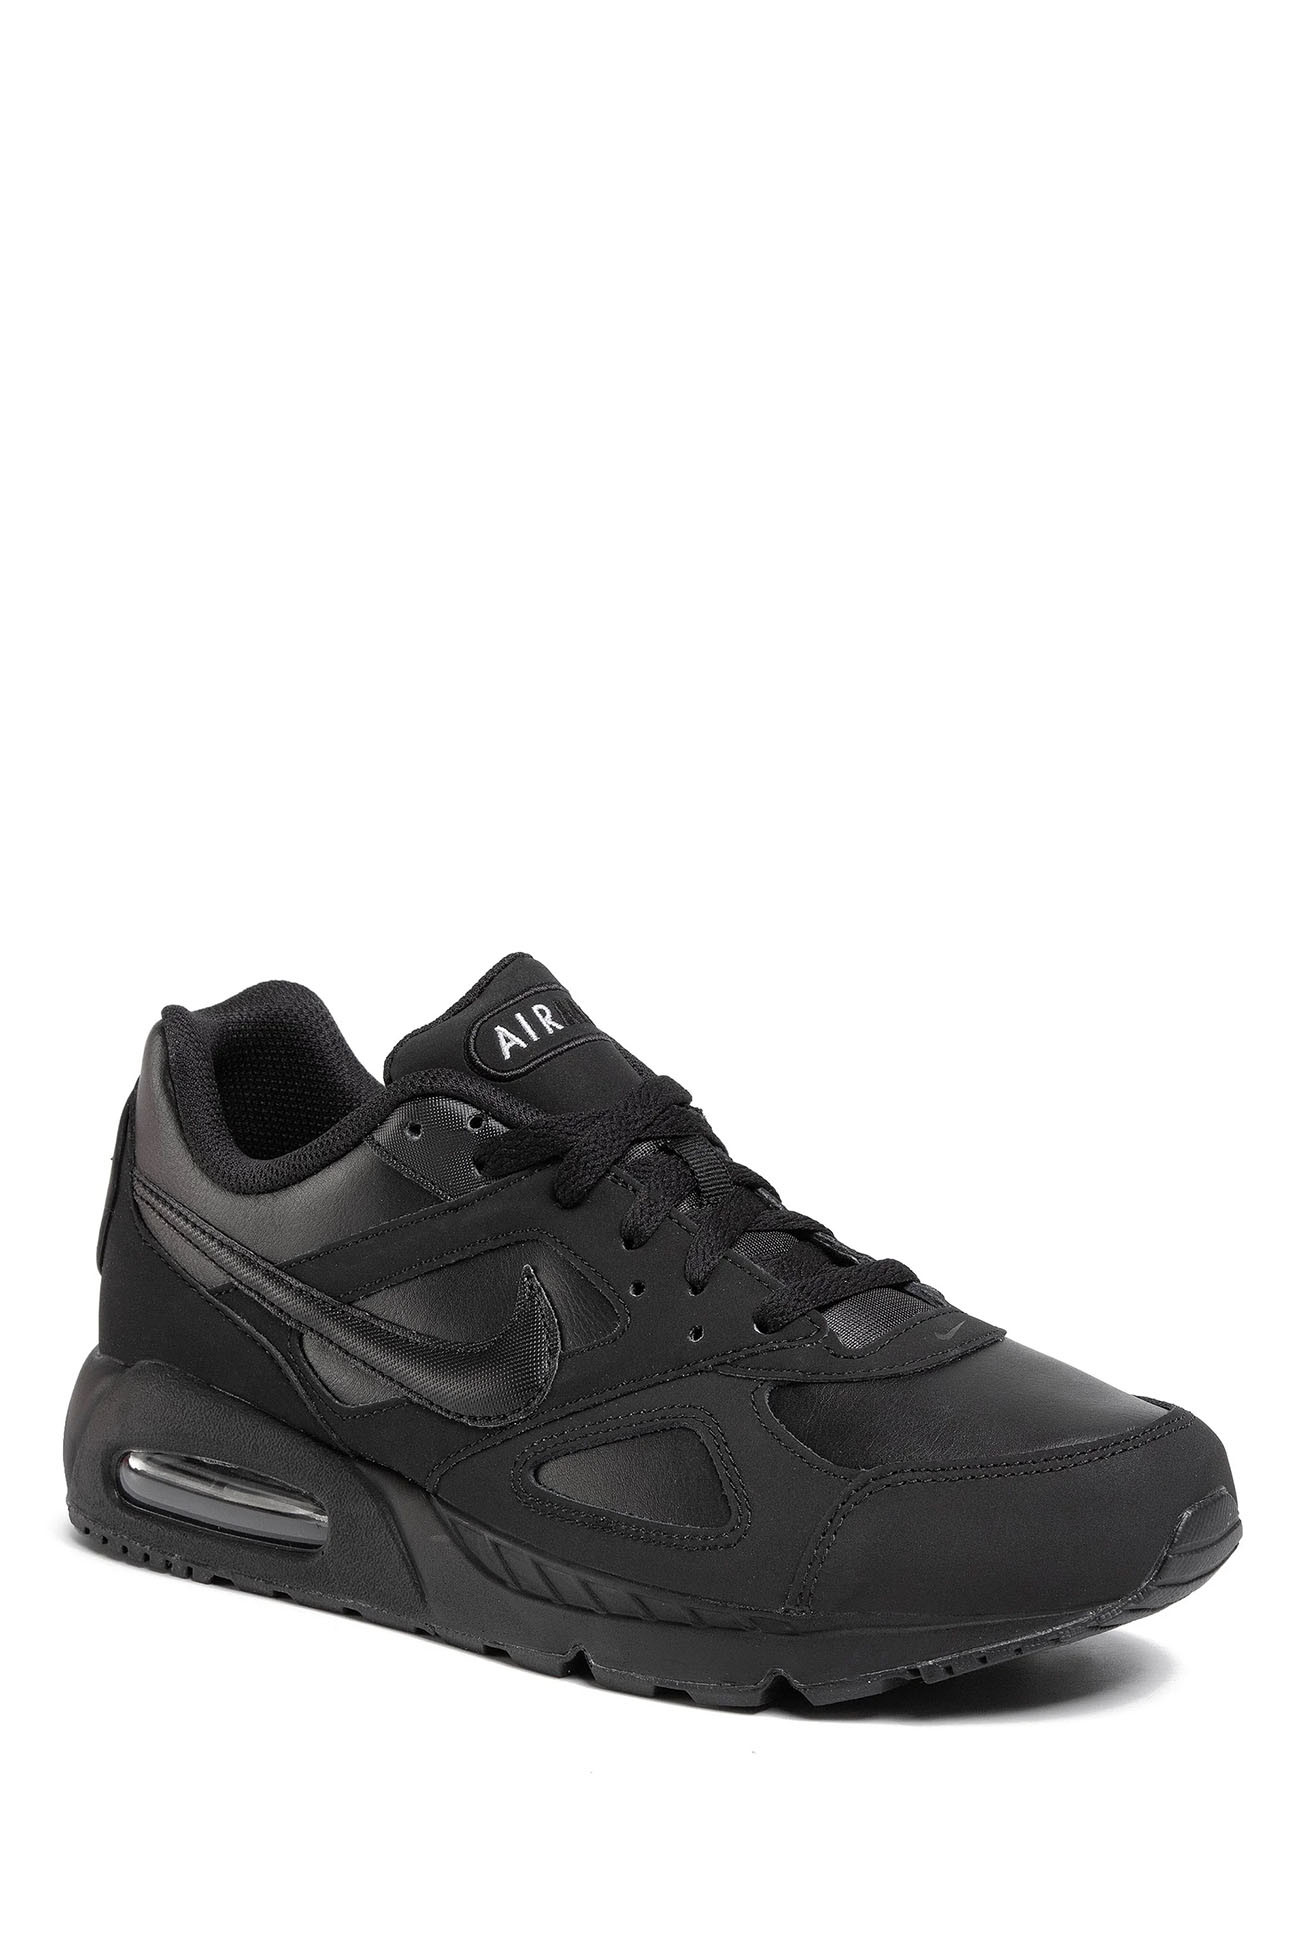 Кроссовки мужские Nike Air Max IVO Leather Shoe черные 580520-002 изображение 2